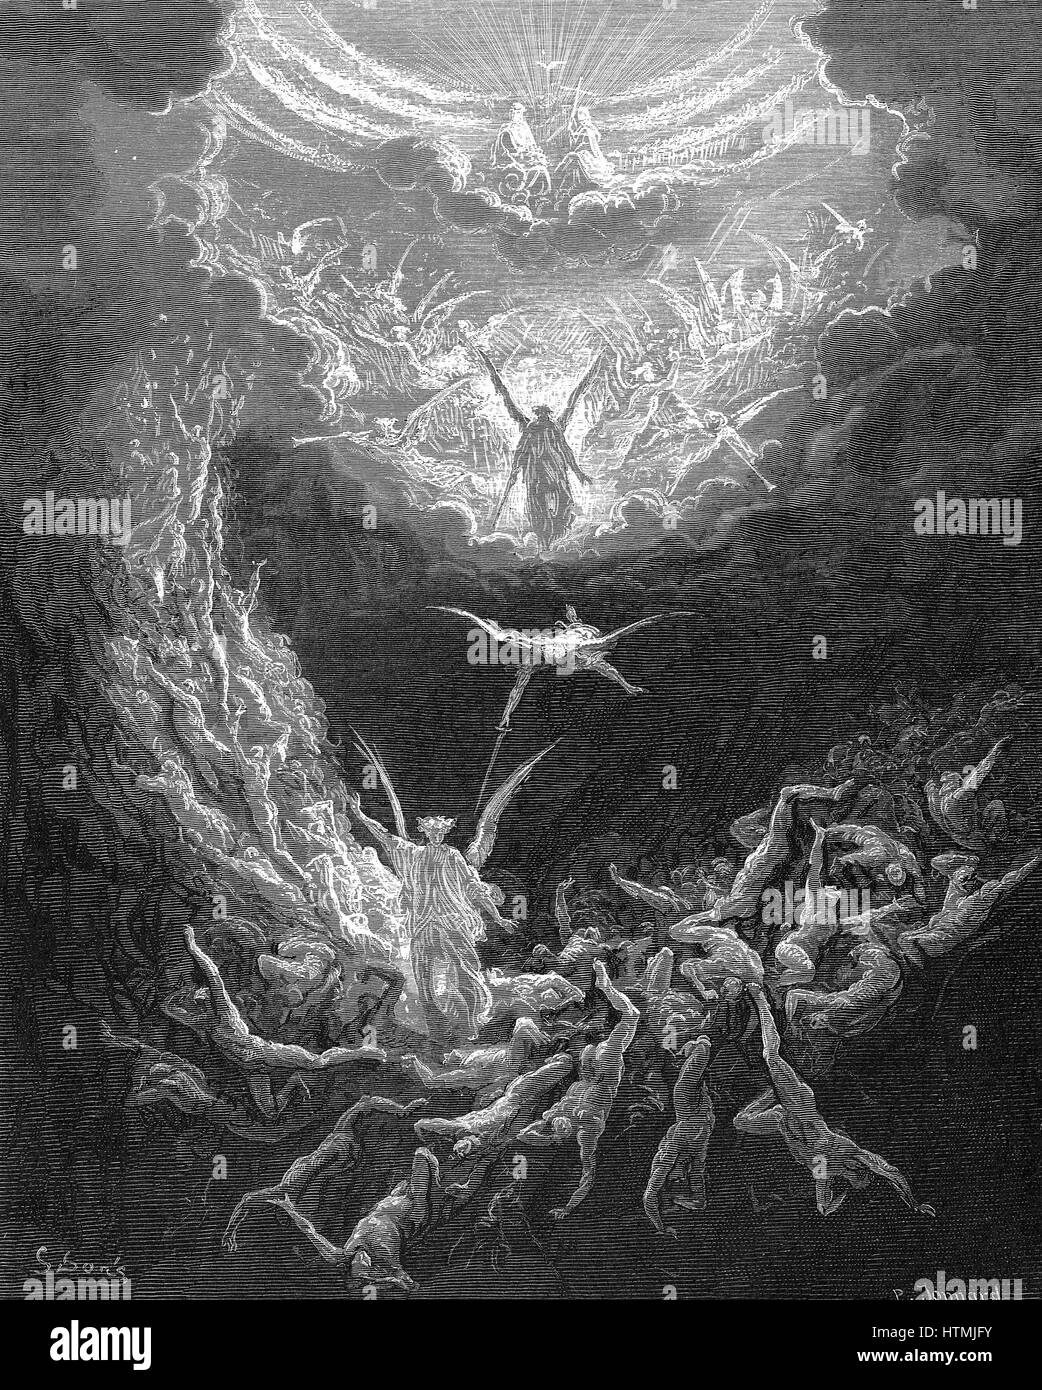 Das jüngste Gericht. "Bibel" Buch der Offenbarung 20:11. Illustration von Gustave Dore 1865-6. Holzstich Stockfoto